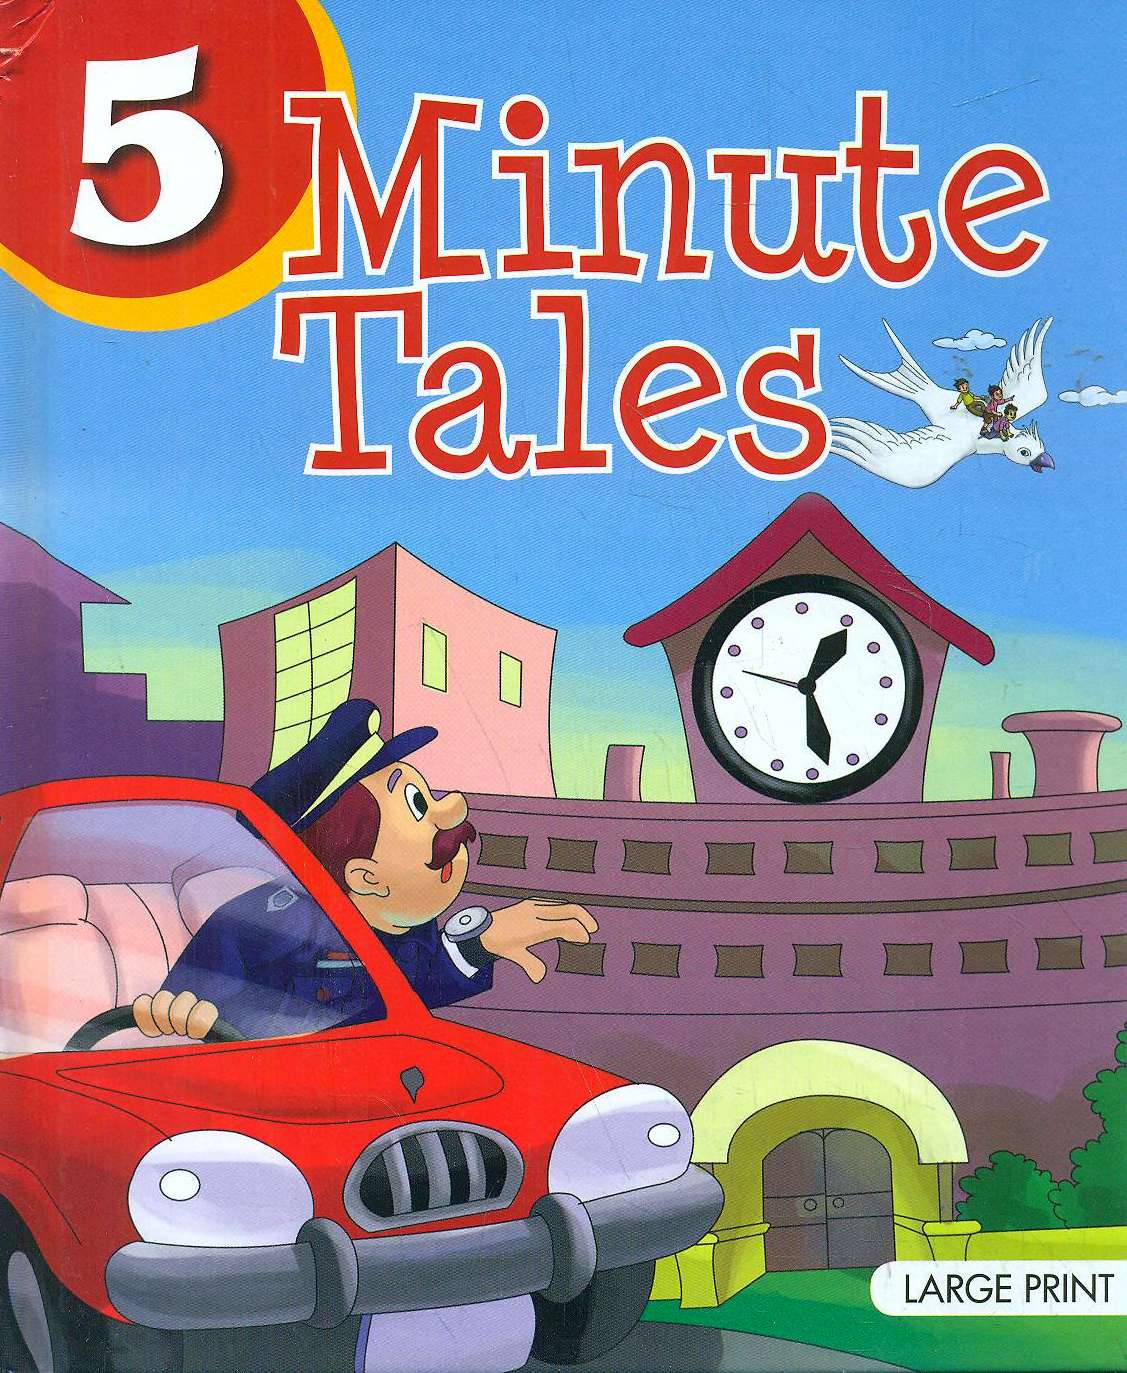 5 Minute Tales